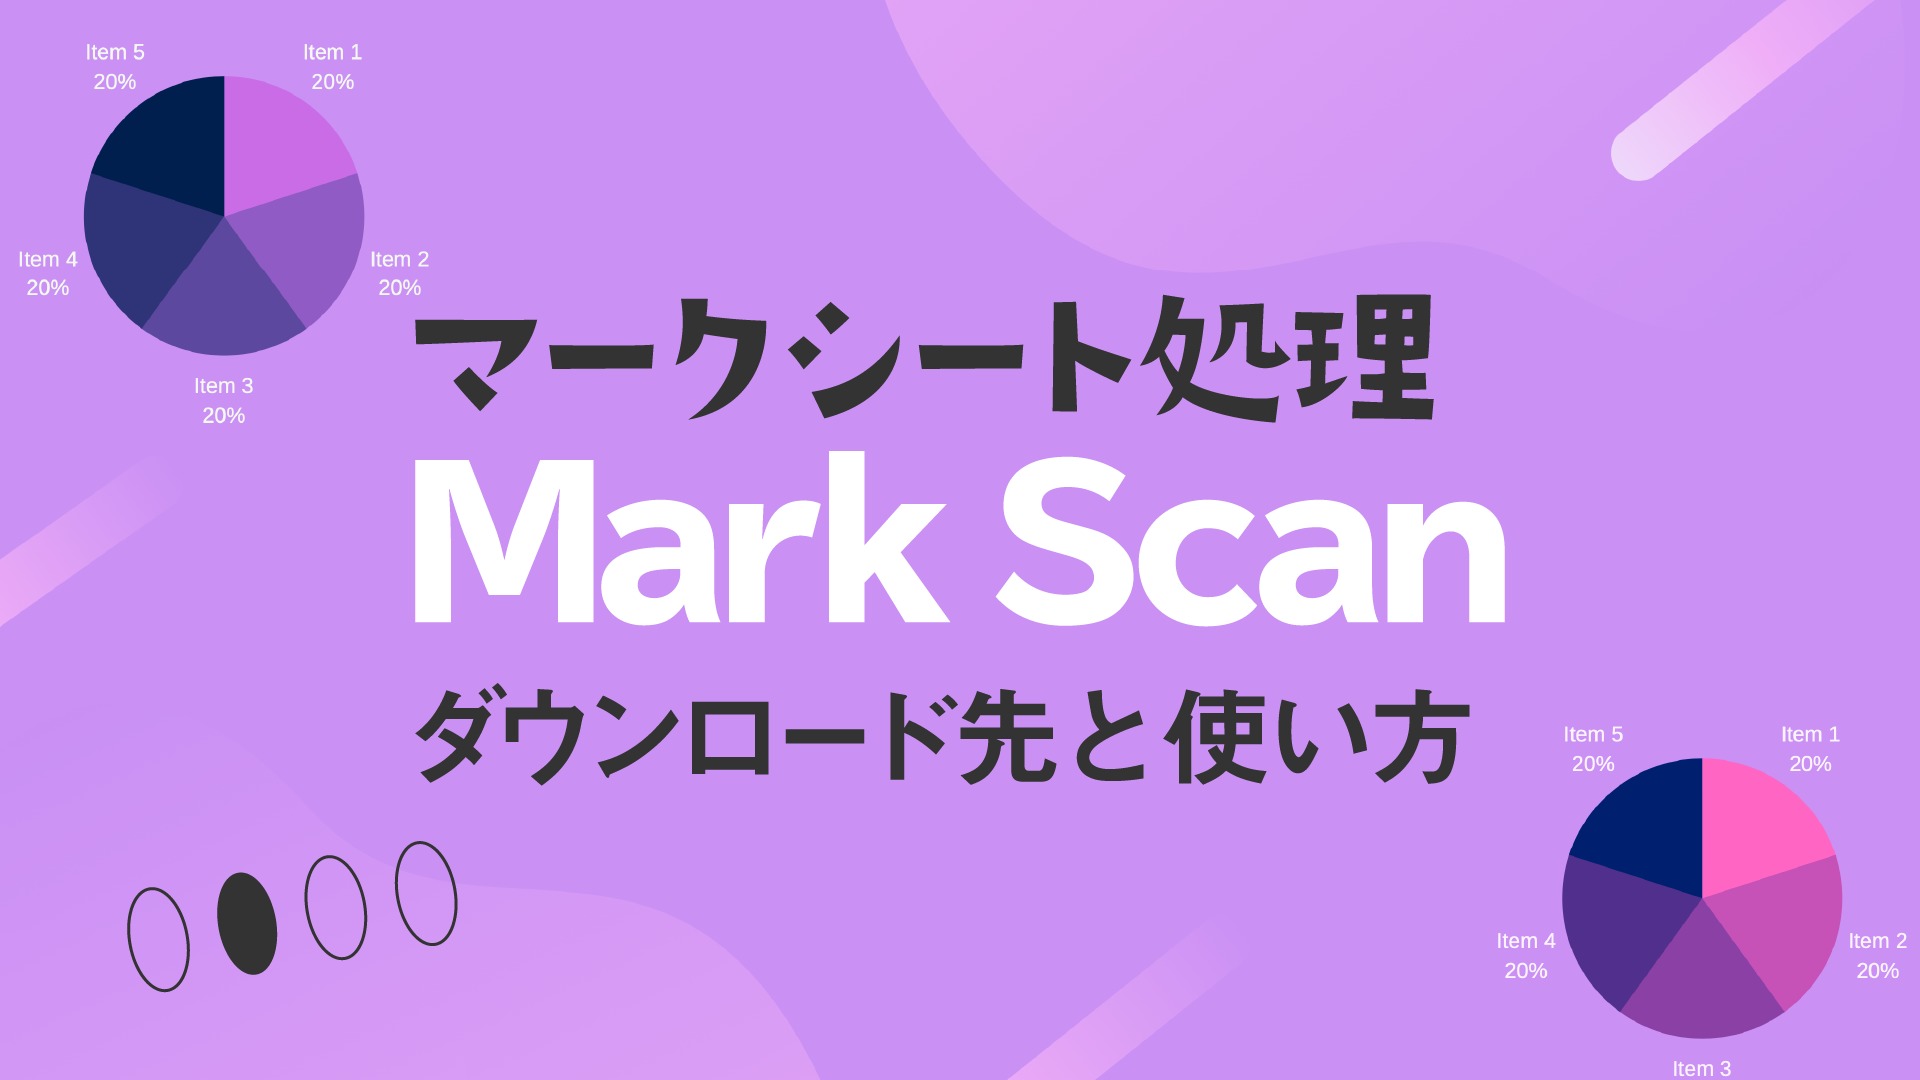 マークシート採点フリーソフト Markscan のダウンロード方法と使い方 Colorfulclass